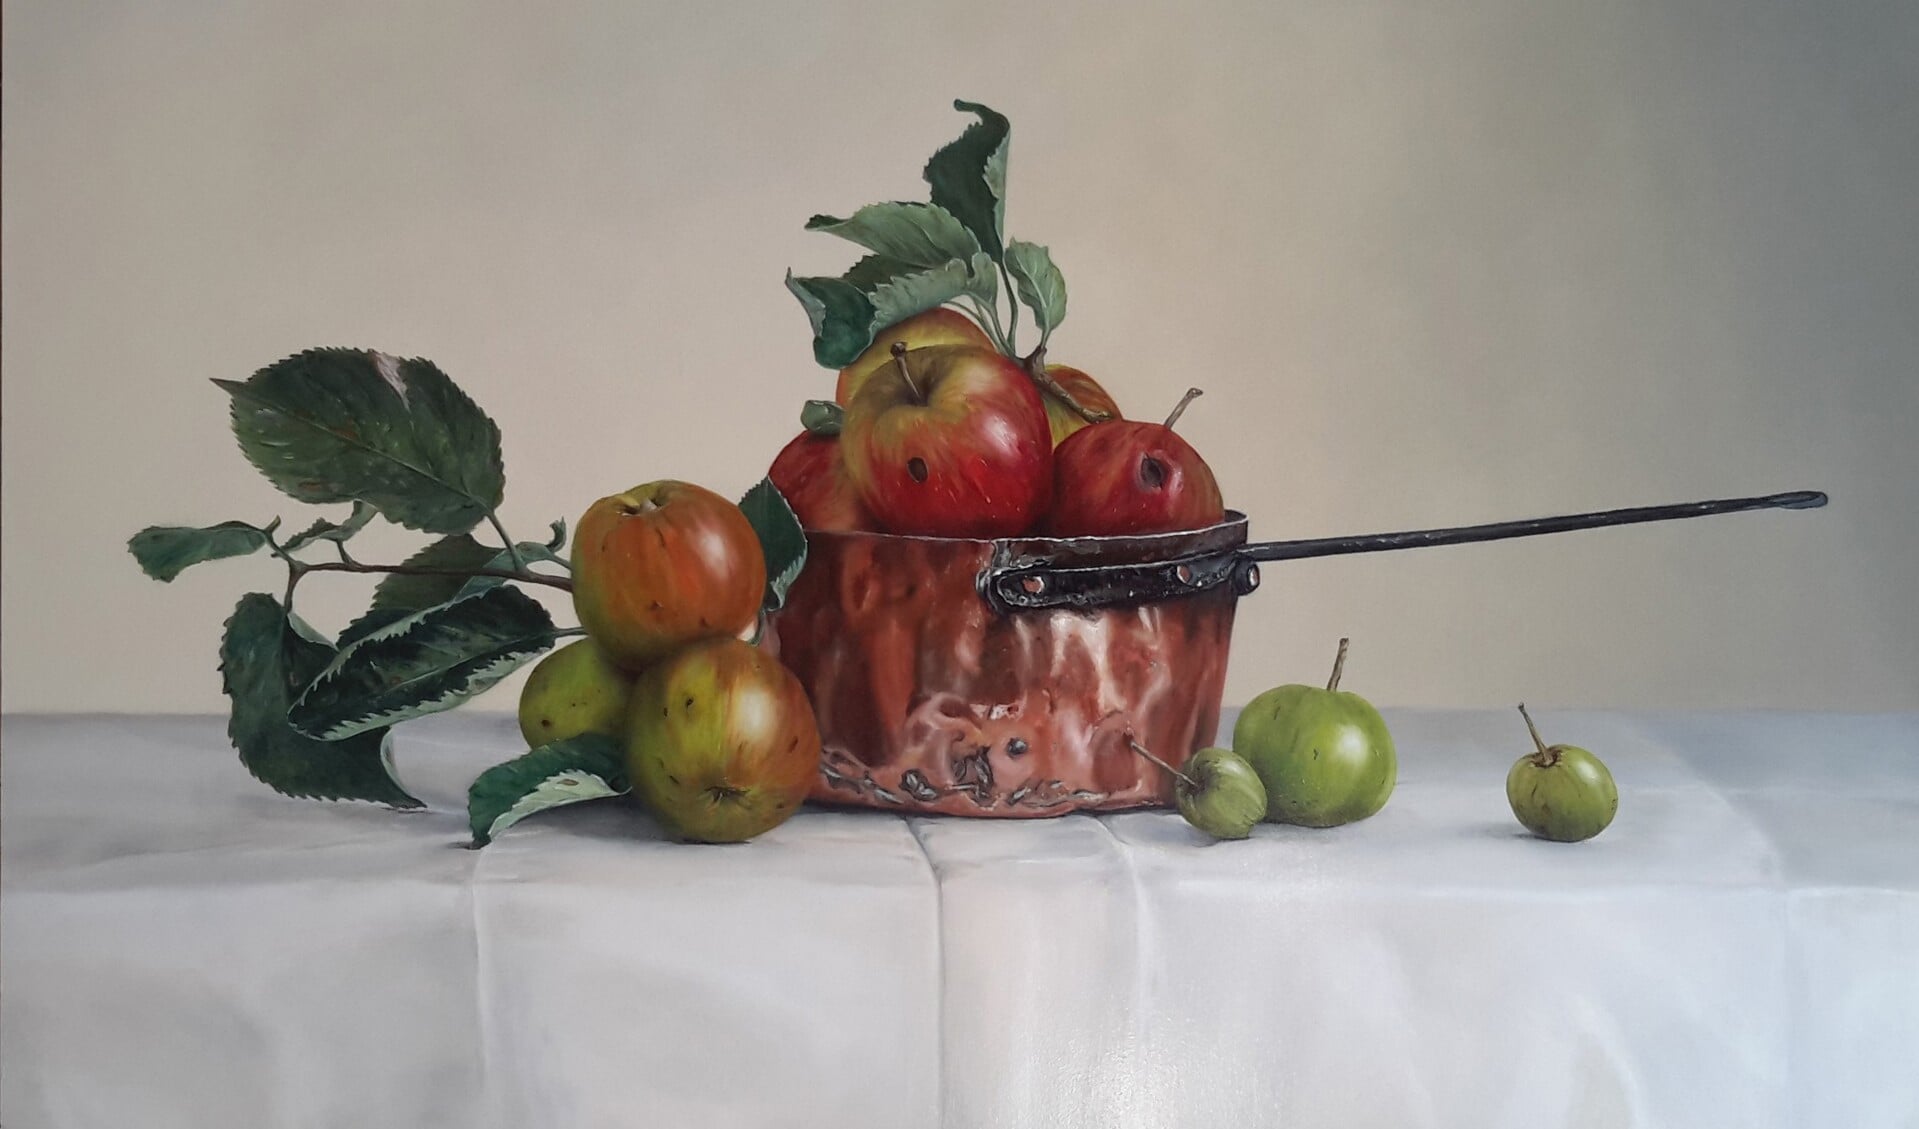 'Appels in koperen pan' van Pieter van Bernebeek.